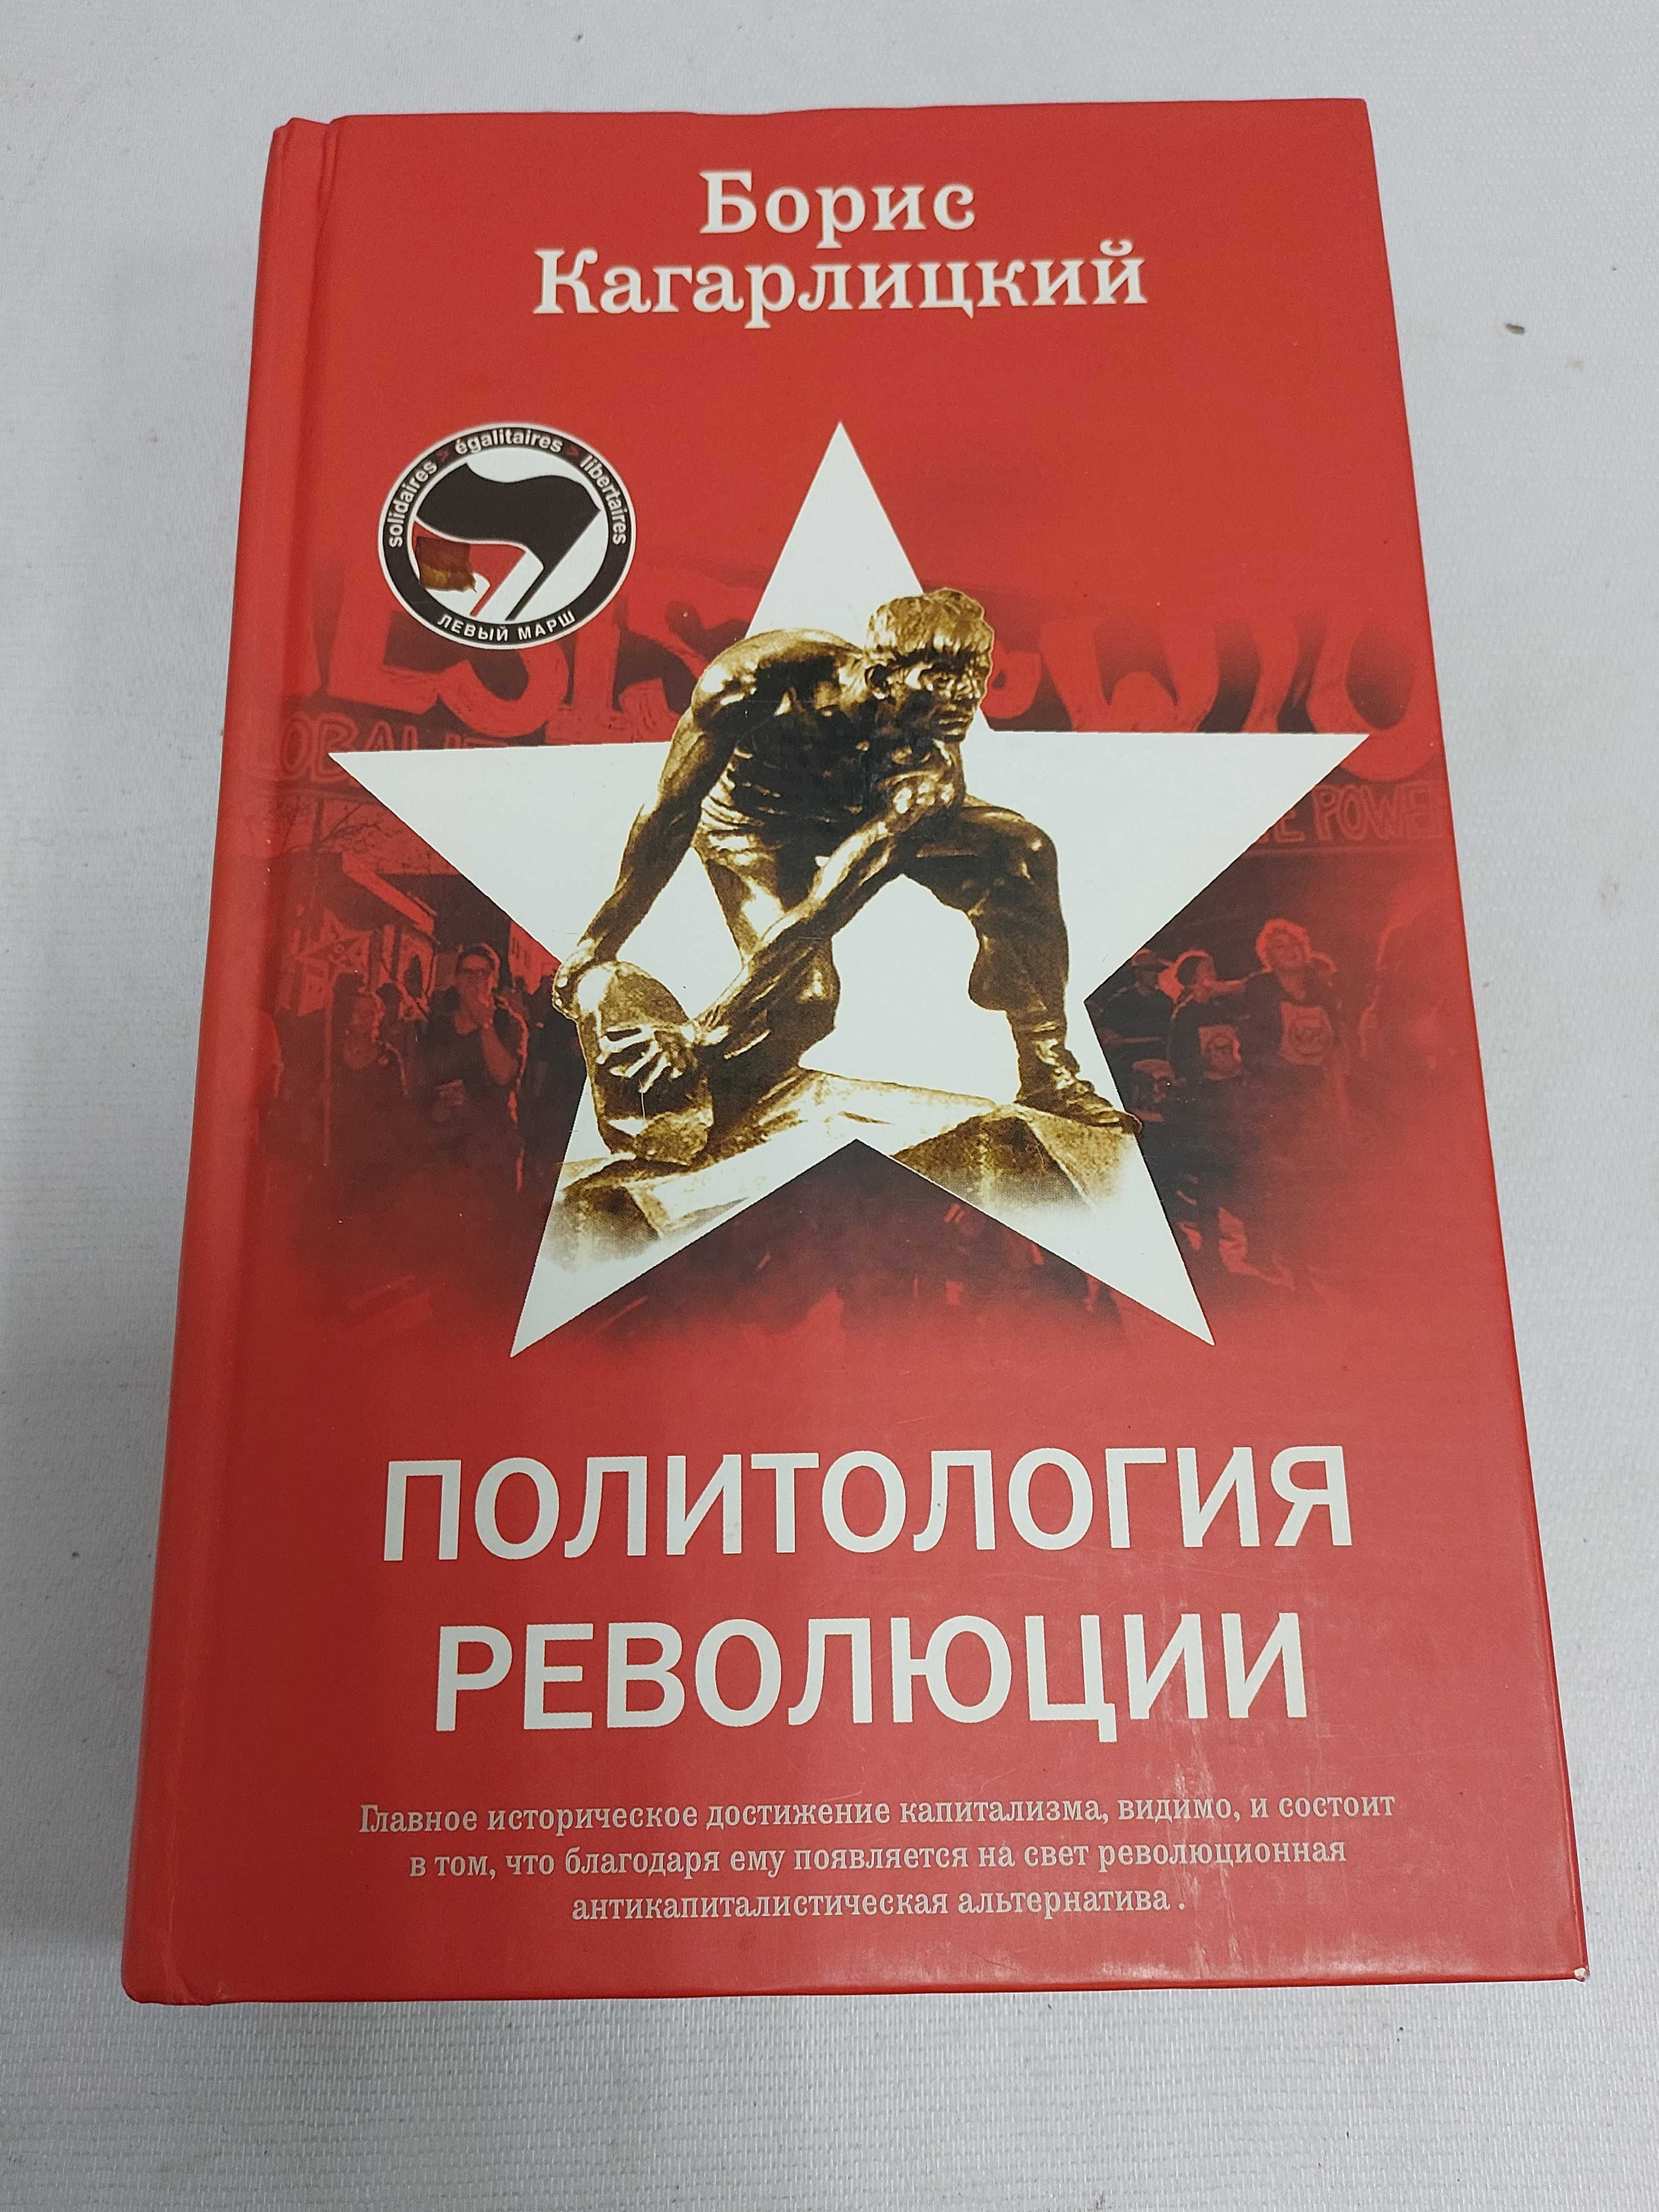 Борис Кагарлицкий. Политология революции.